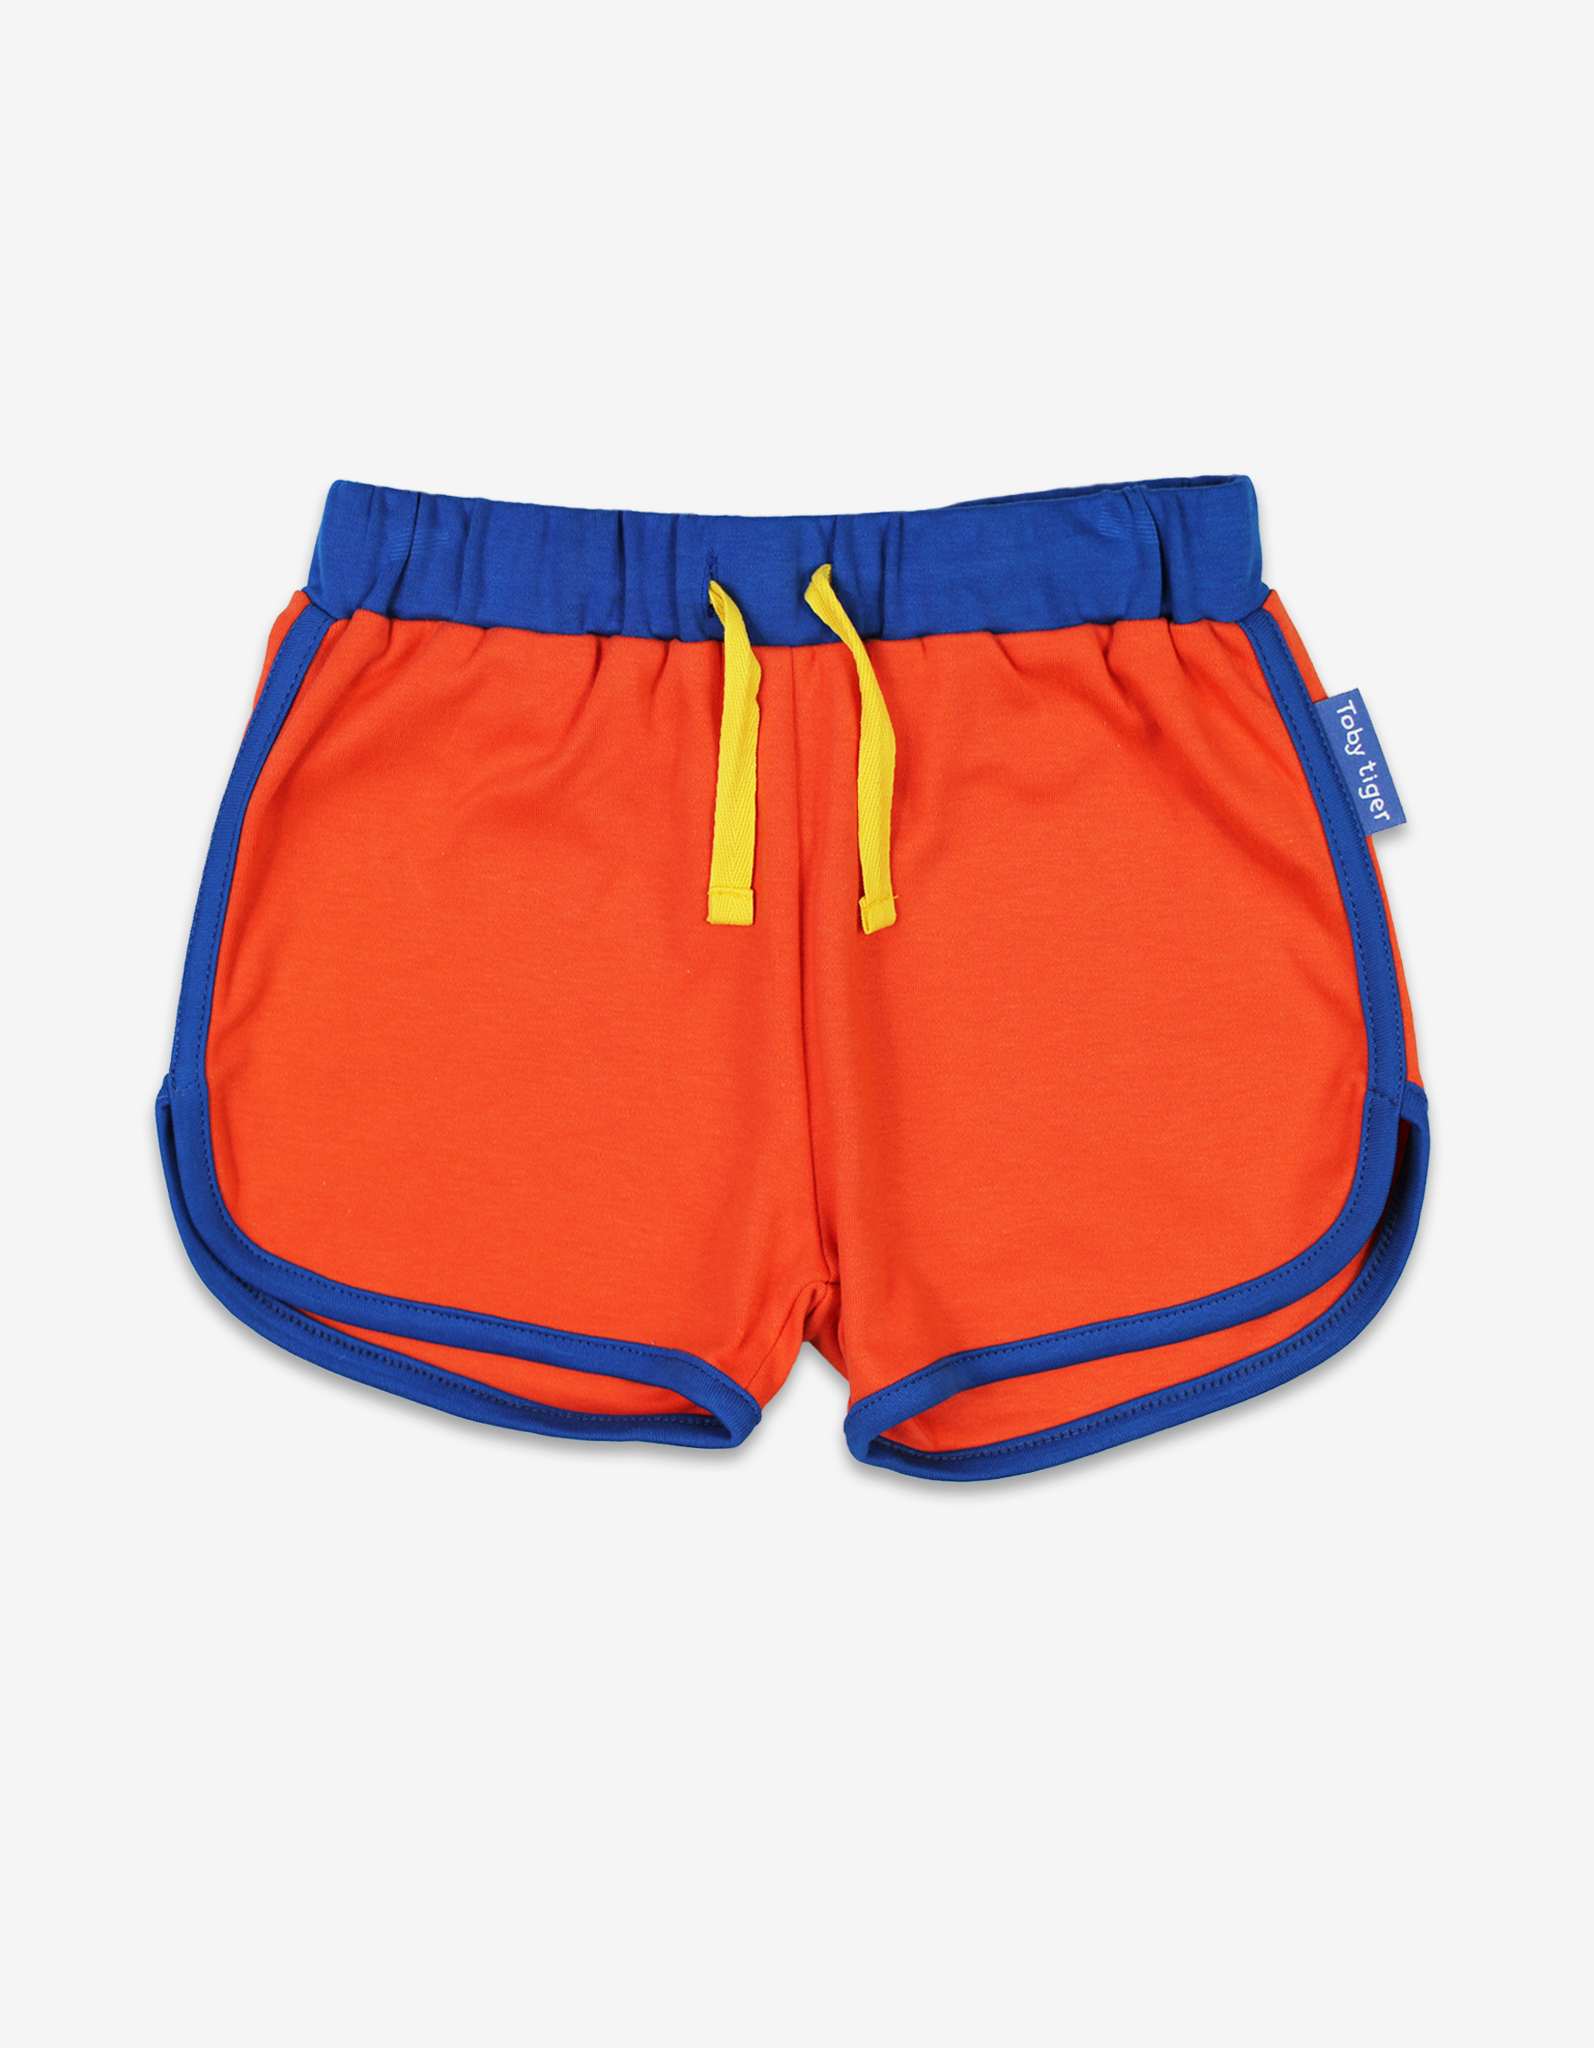 Organic Orange Running Shorts - 4